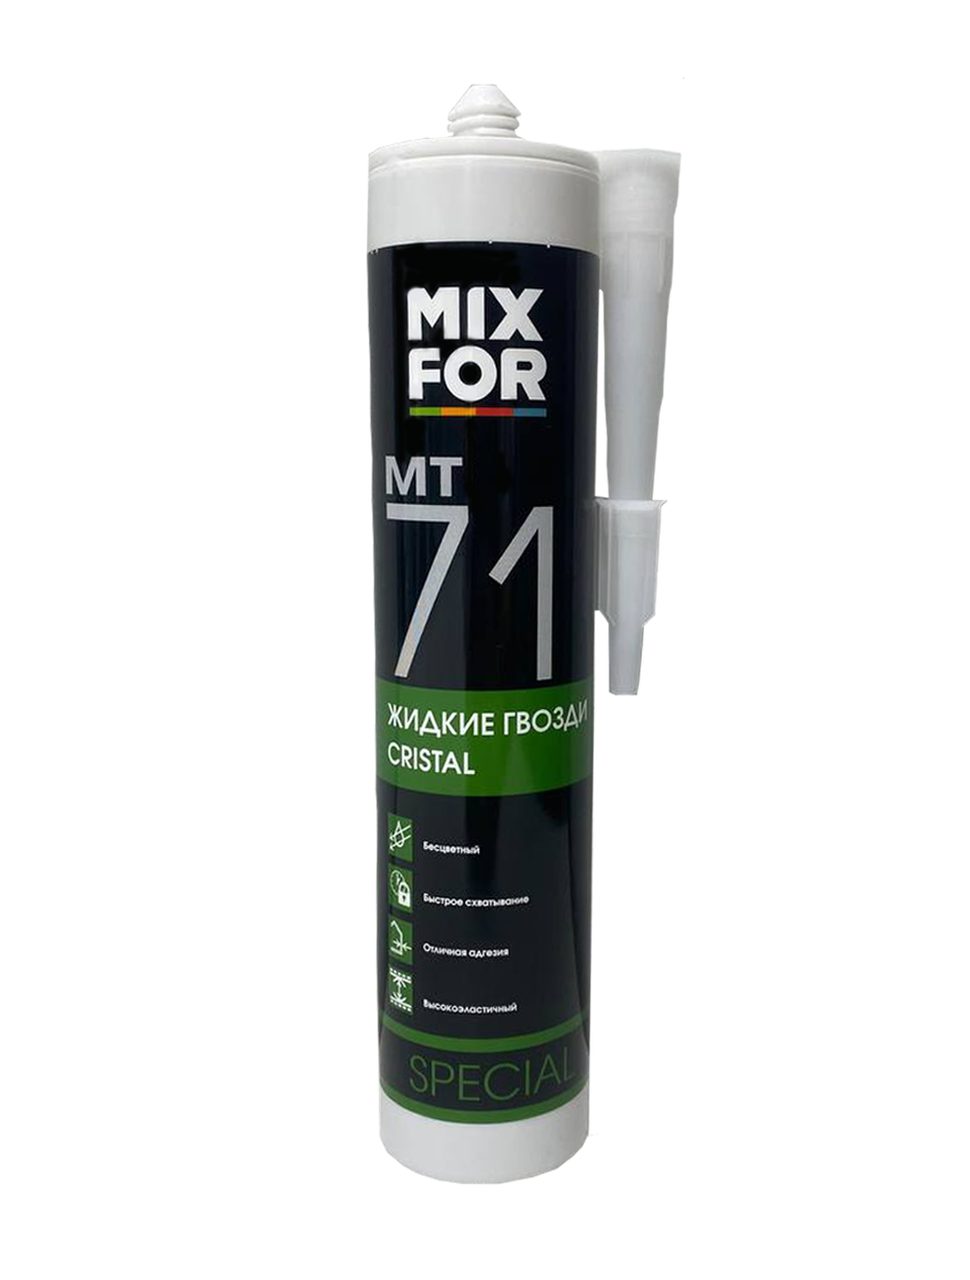 Клей жидкие гвозди  MIXFOR МТ-71  CRISTAL 260мл  (прозрачный)